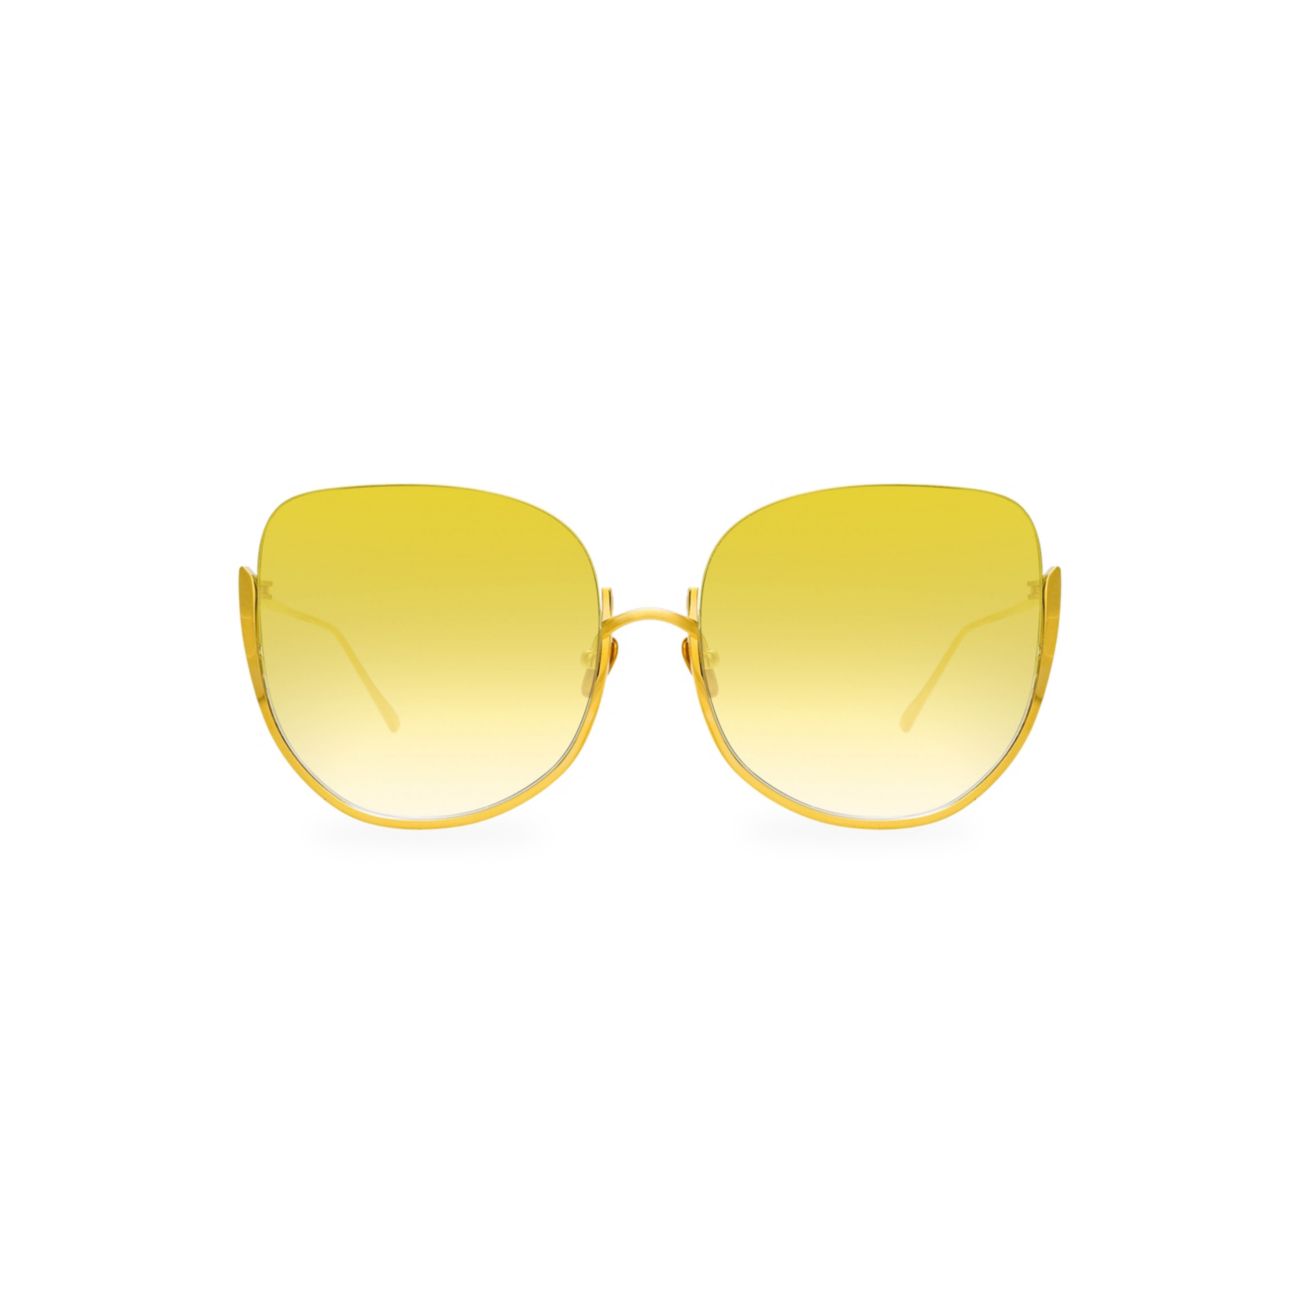 Крупные солнцезащитные очки 847 C4 Kennedy Linda Farrow